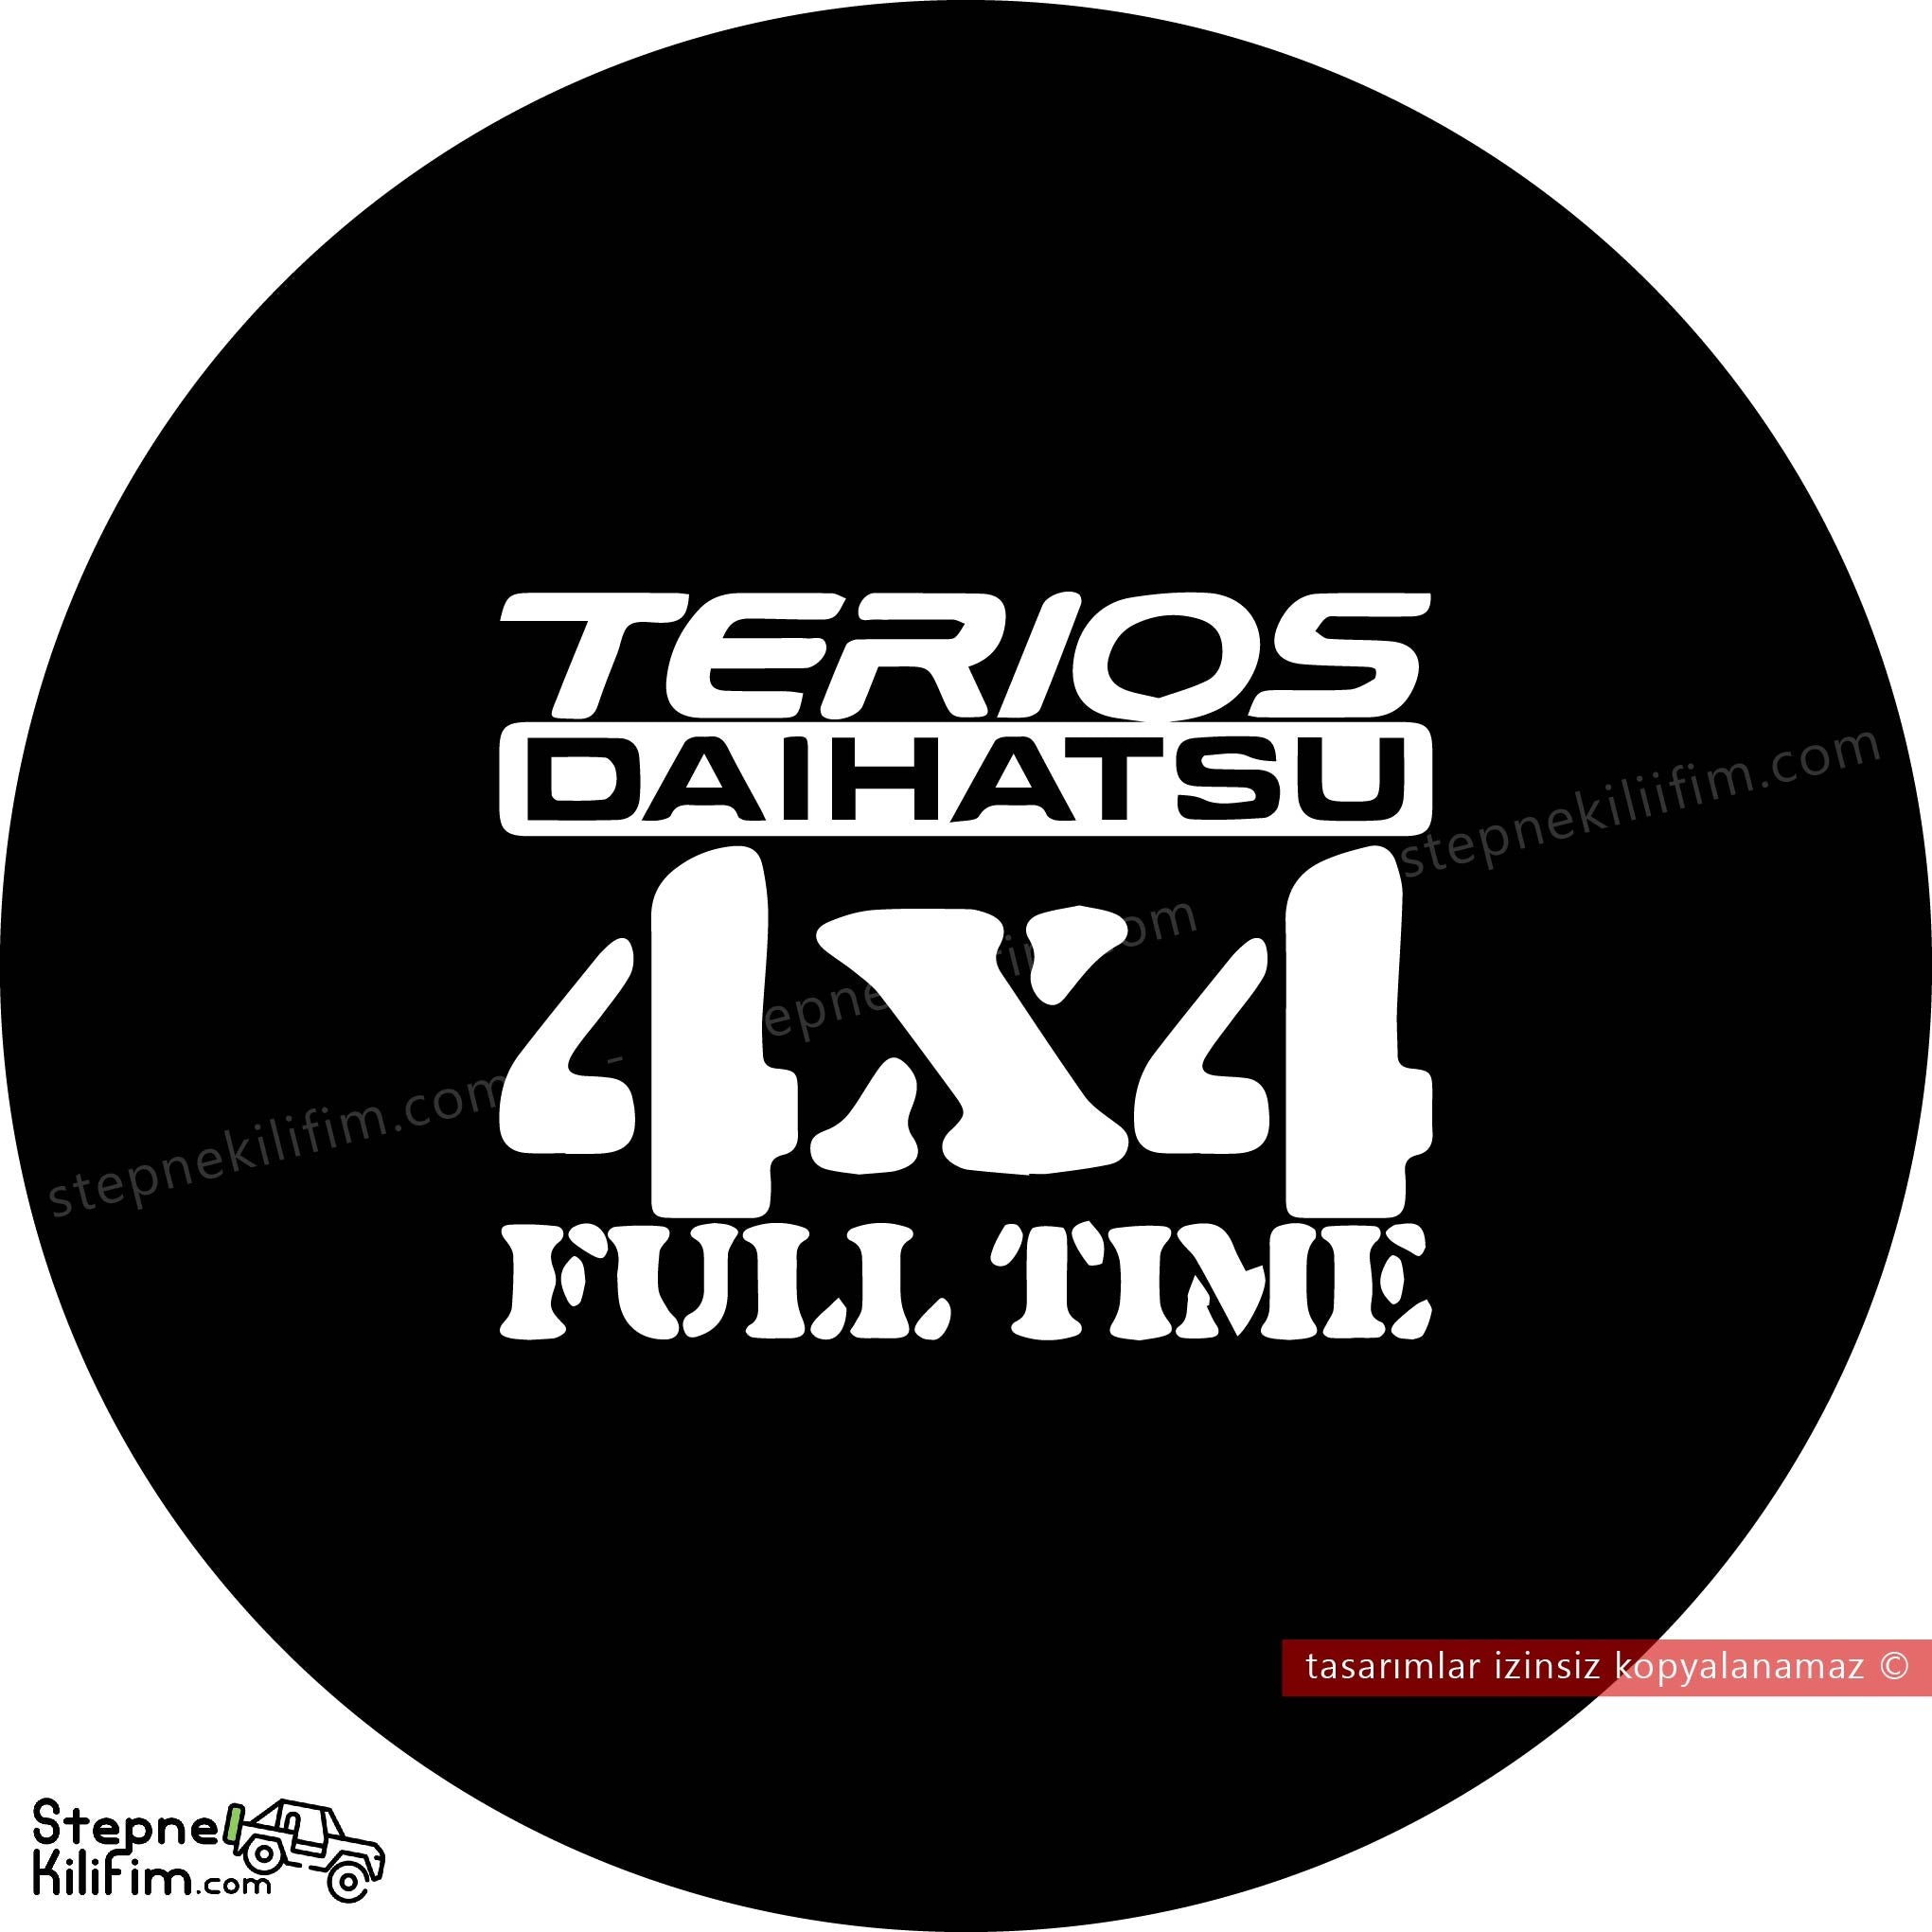 Daihatsu Terios 4x4 Full Time Stepne Kılıfı